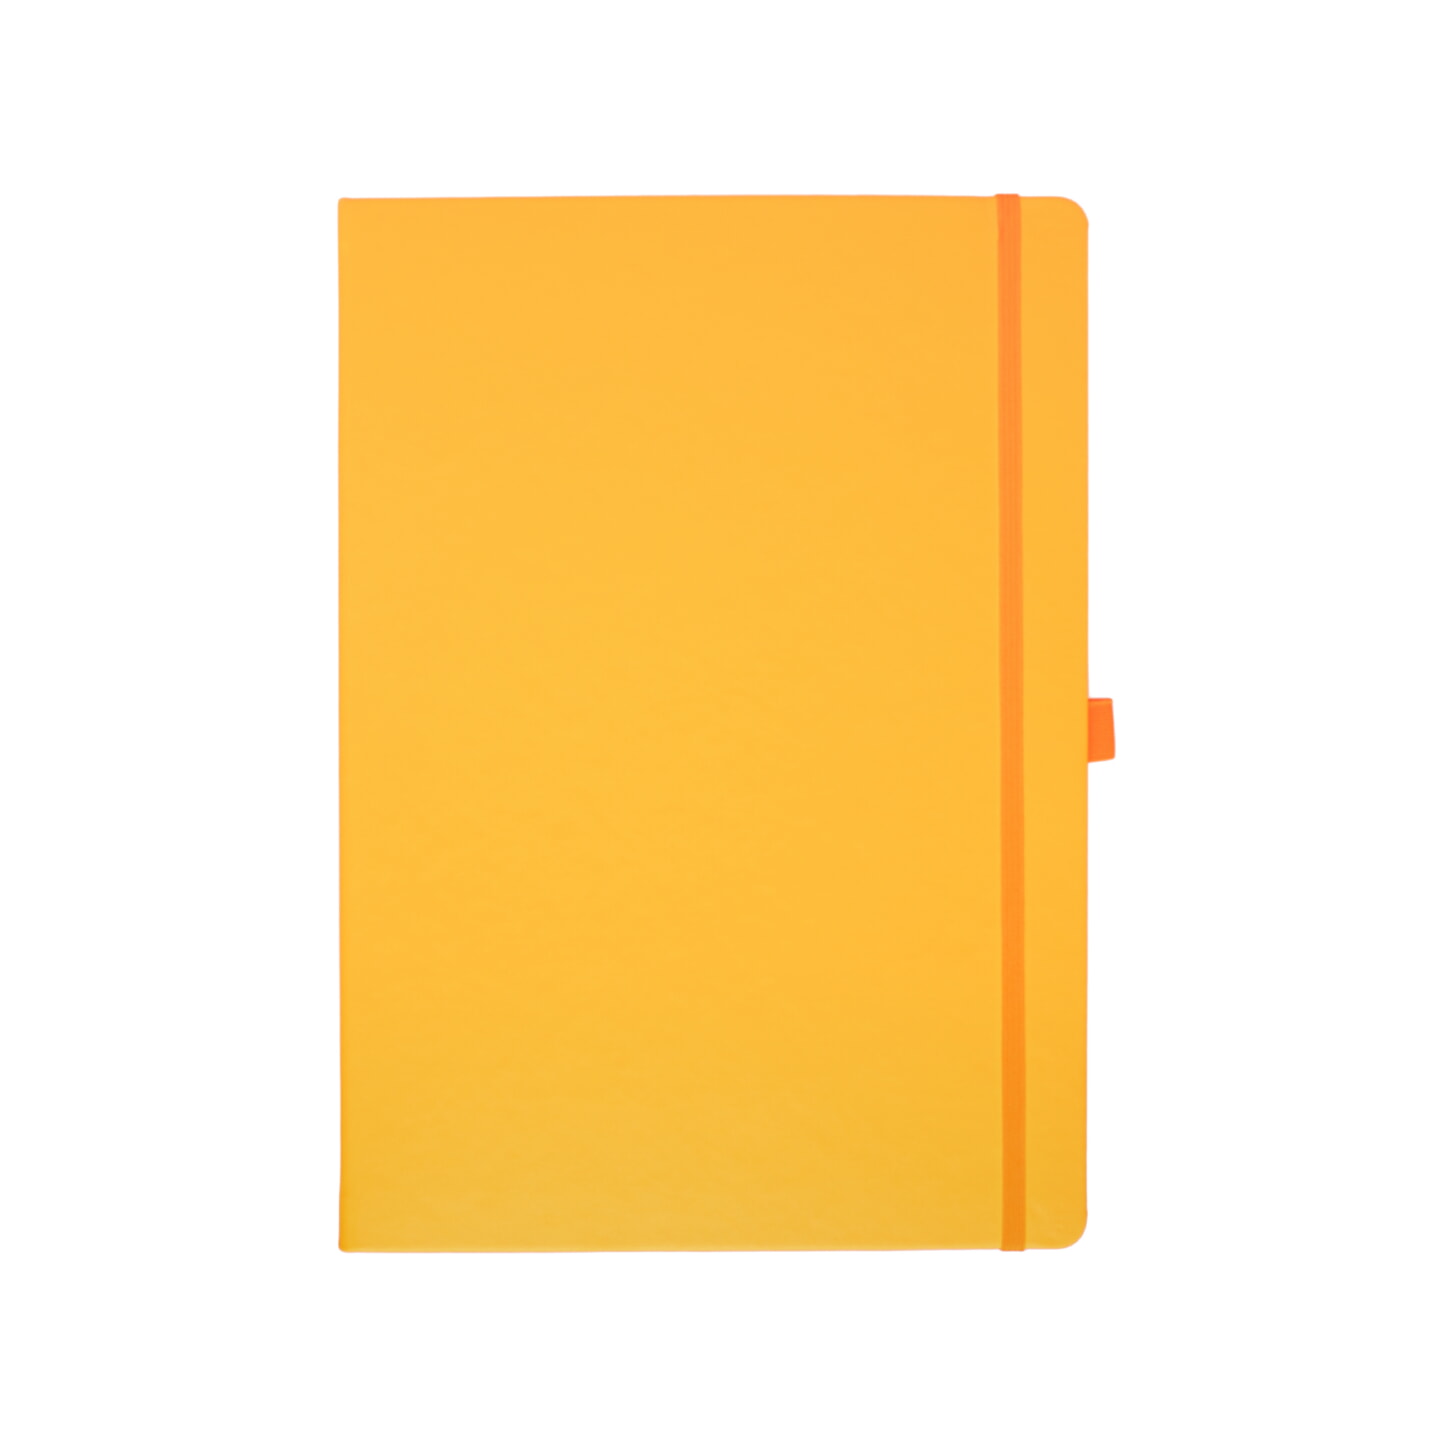 Блокнот для зарисовок Sketchmarker 140г/кв.м 21*29.7см 80л твердая обложка Неоновый апельсин